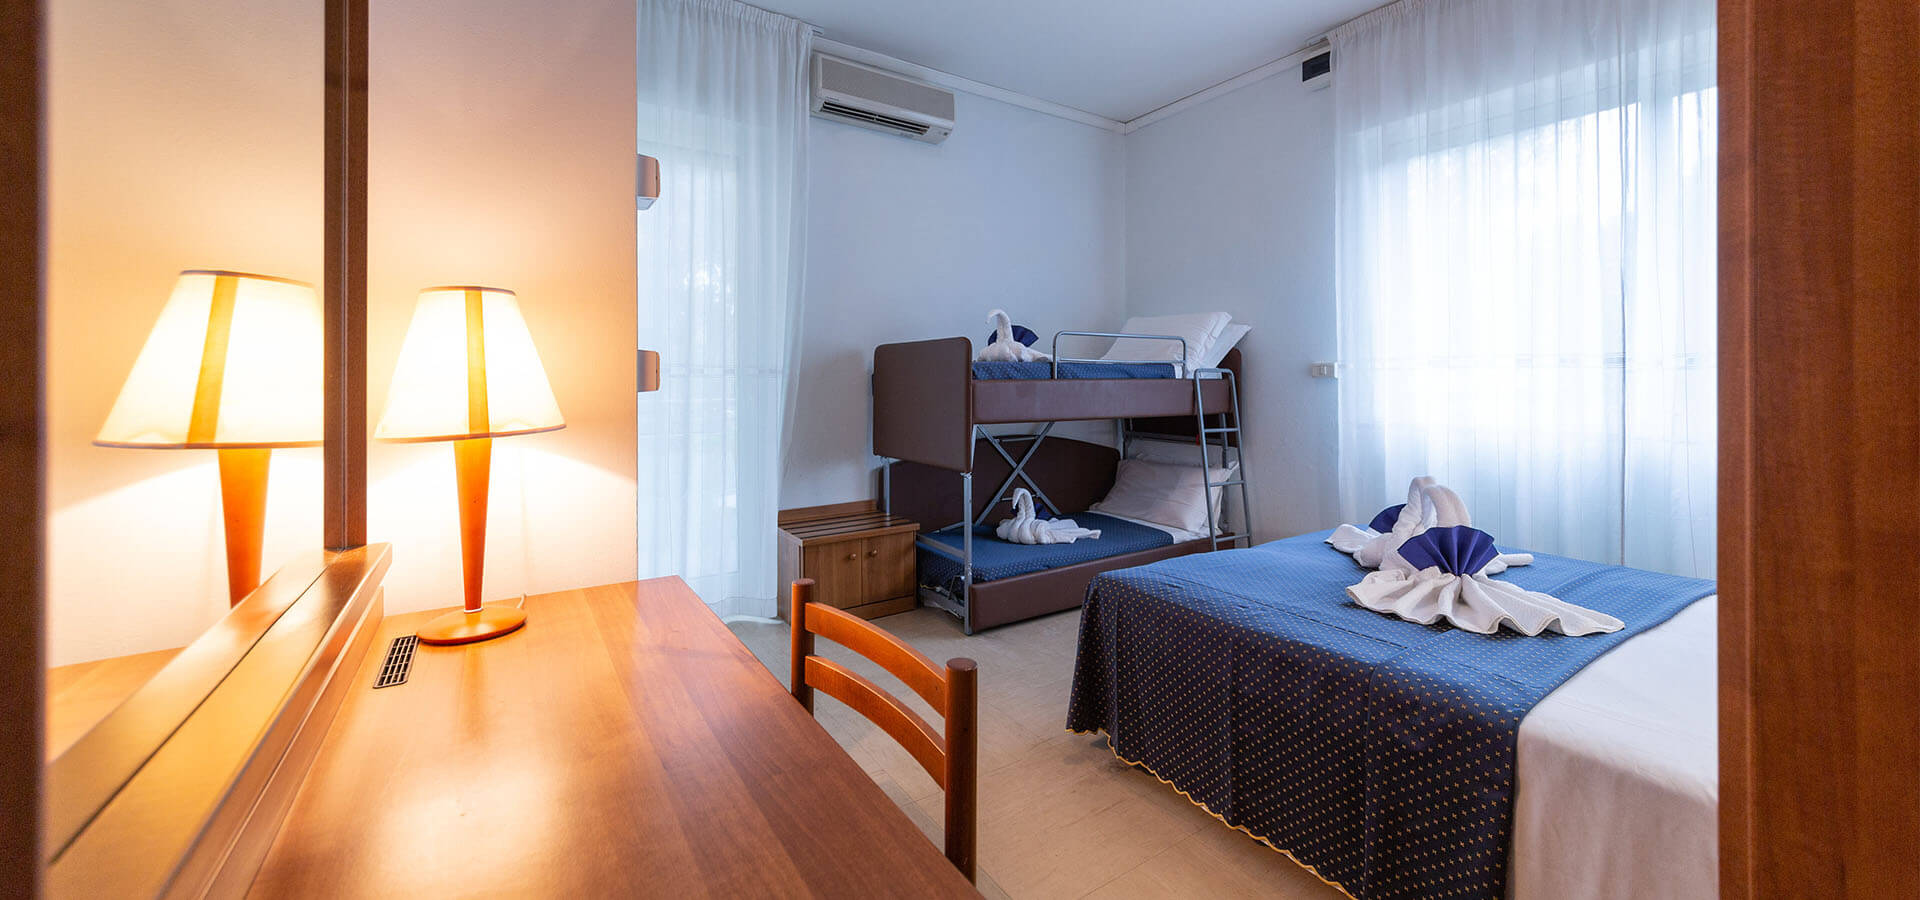 Camera quadrupla per famiglie hotel a Lignano Sabbiadoro